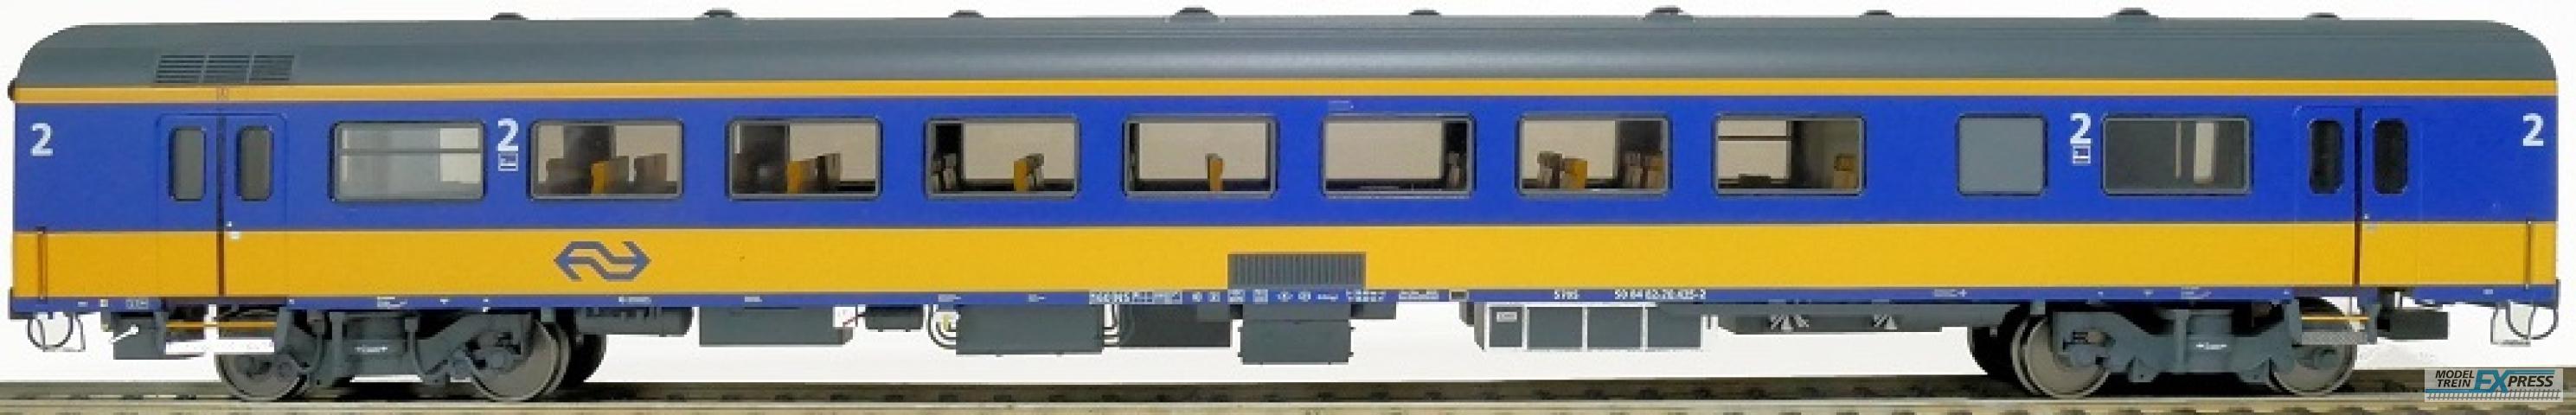 Exact-train 11176 NS ICRm Garnitur 4 Reisezugwagen Bd( Neue farbe Gelb / Blau) mit Beleuchtung und Figuren, Ep. V